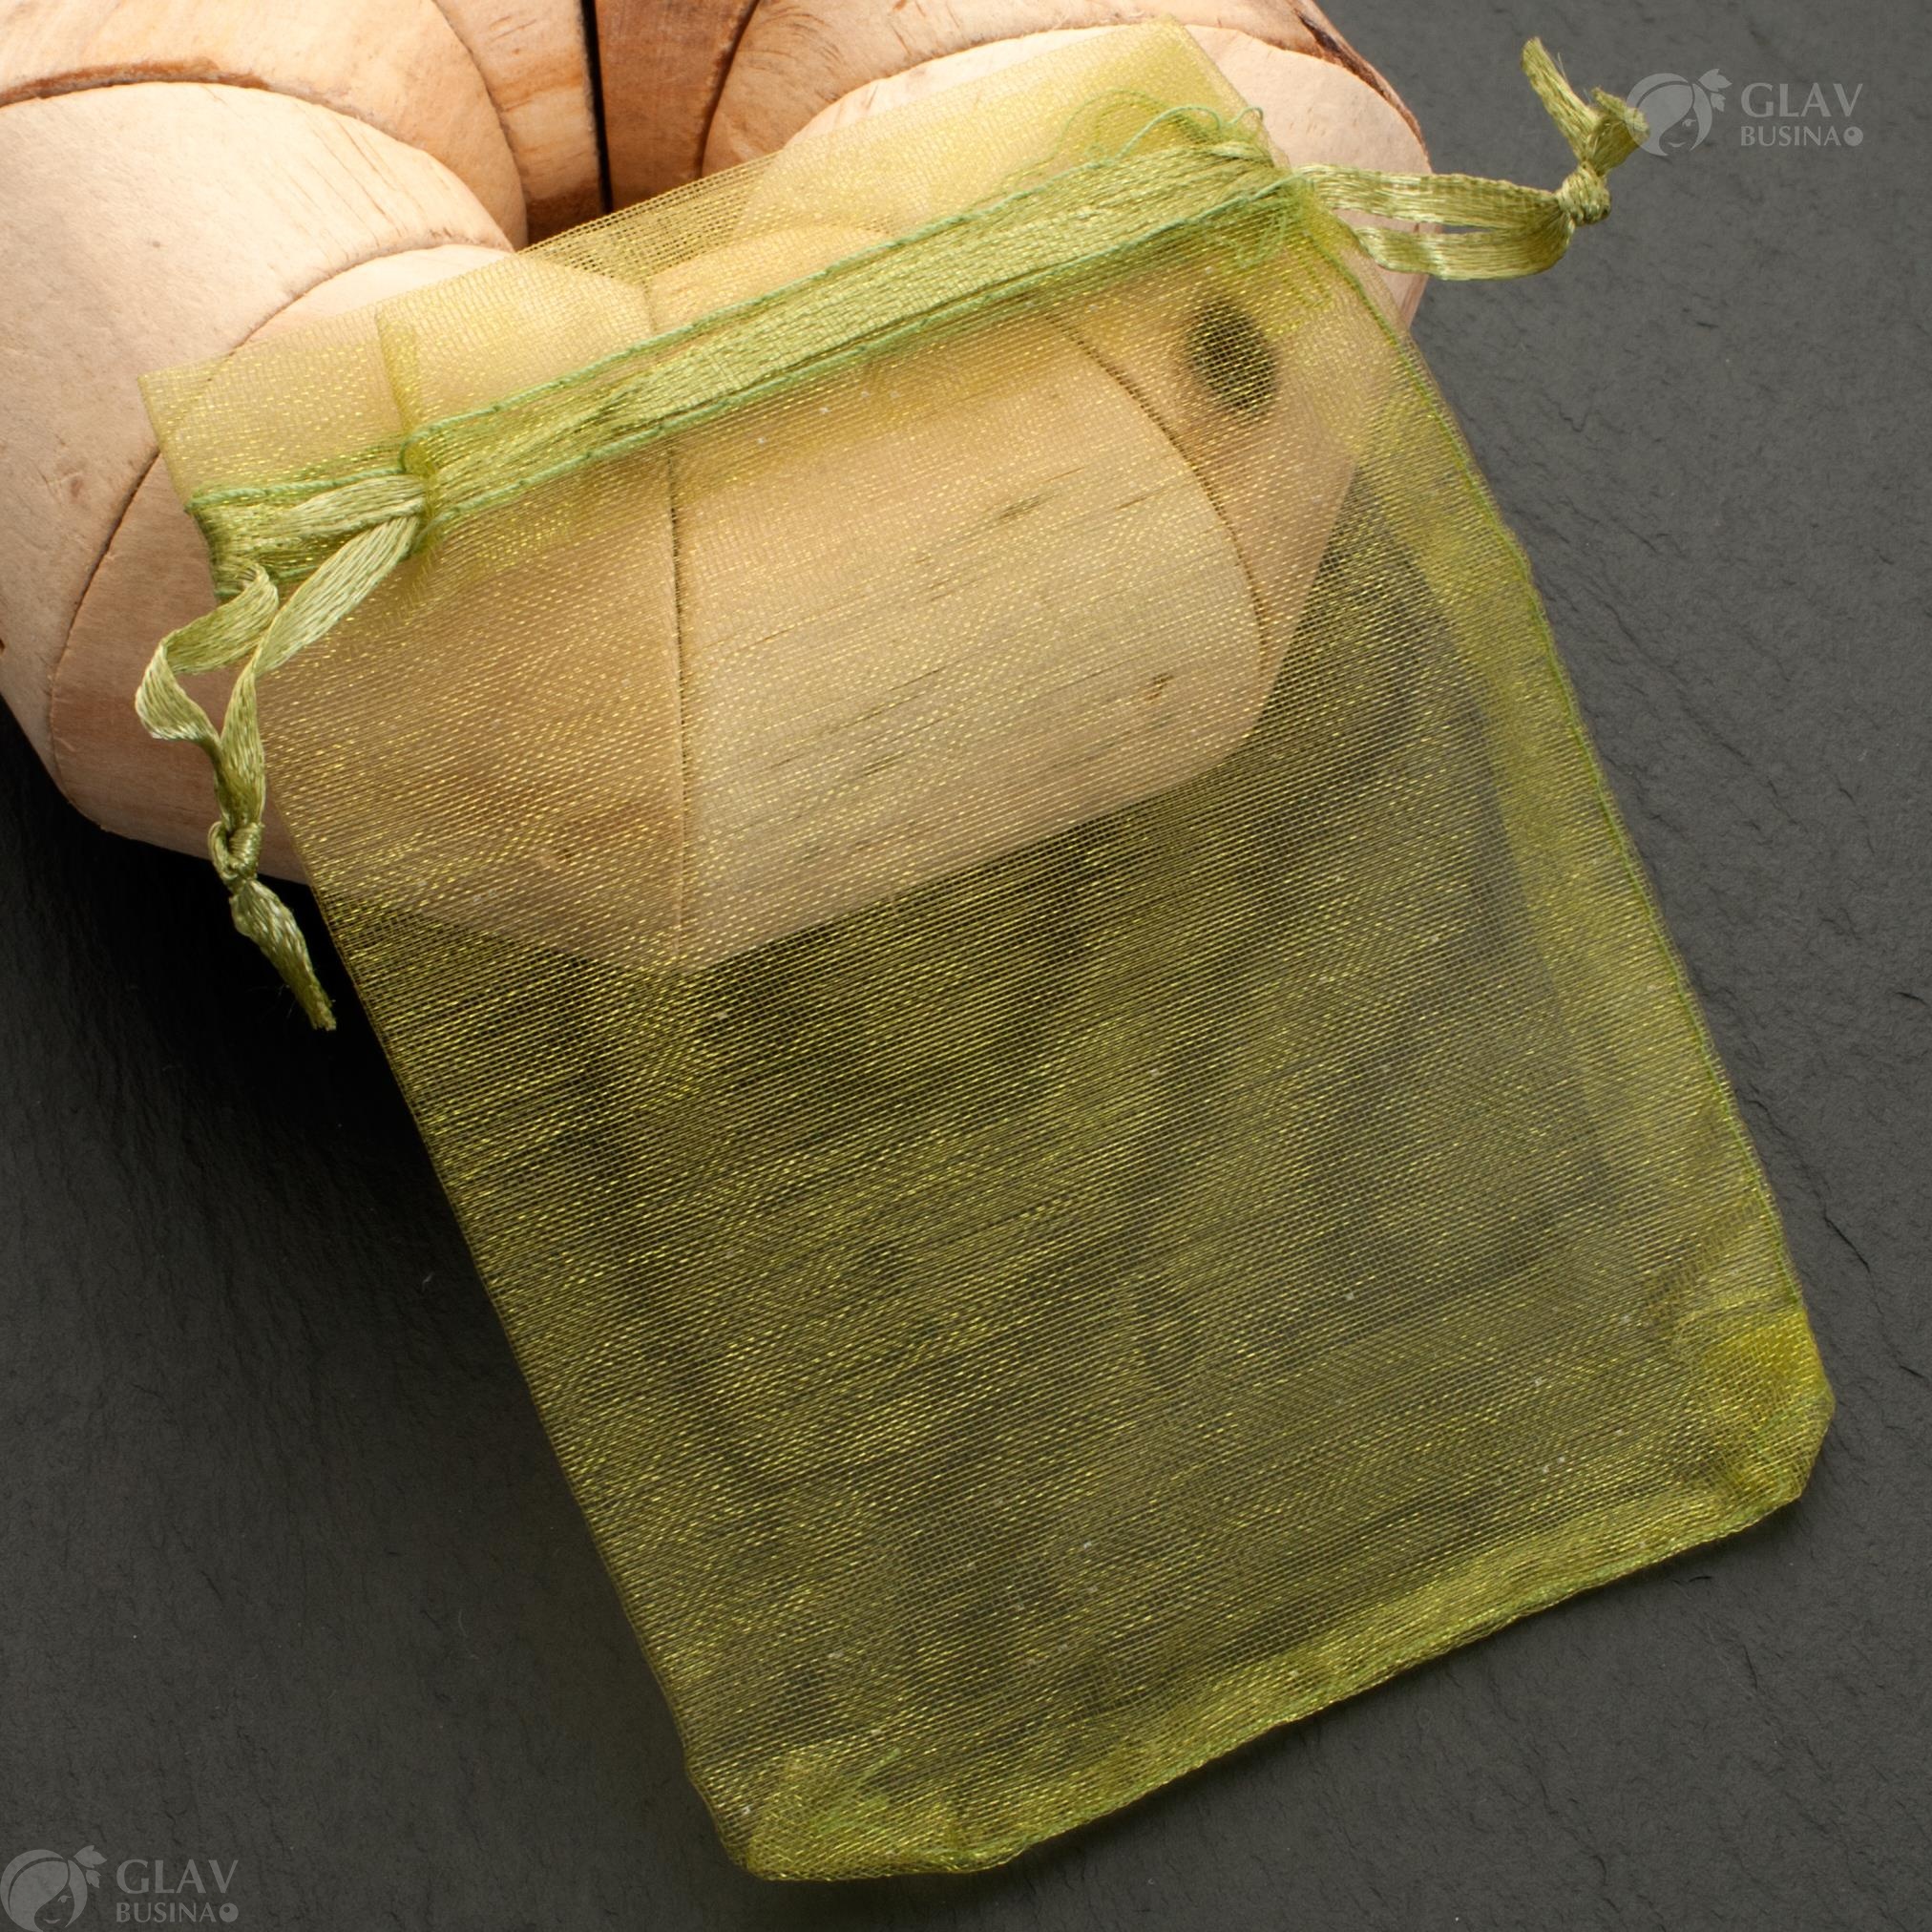 Оливковые мешочки из органзы с ленточкой, размером 9х12 см, идеальны для упаковки подарков или украшений.